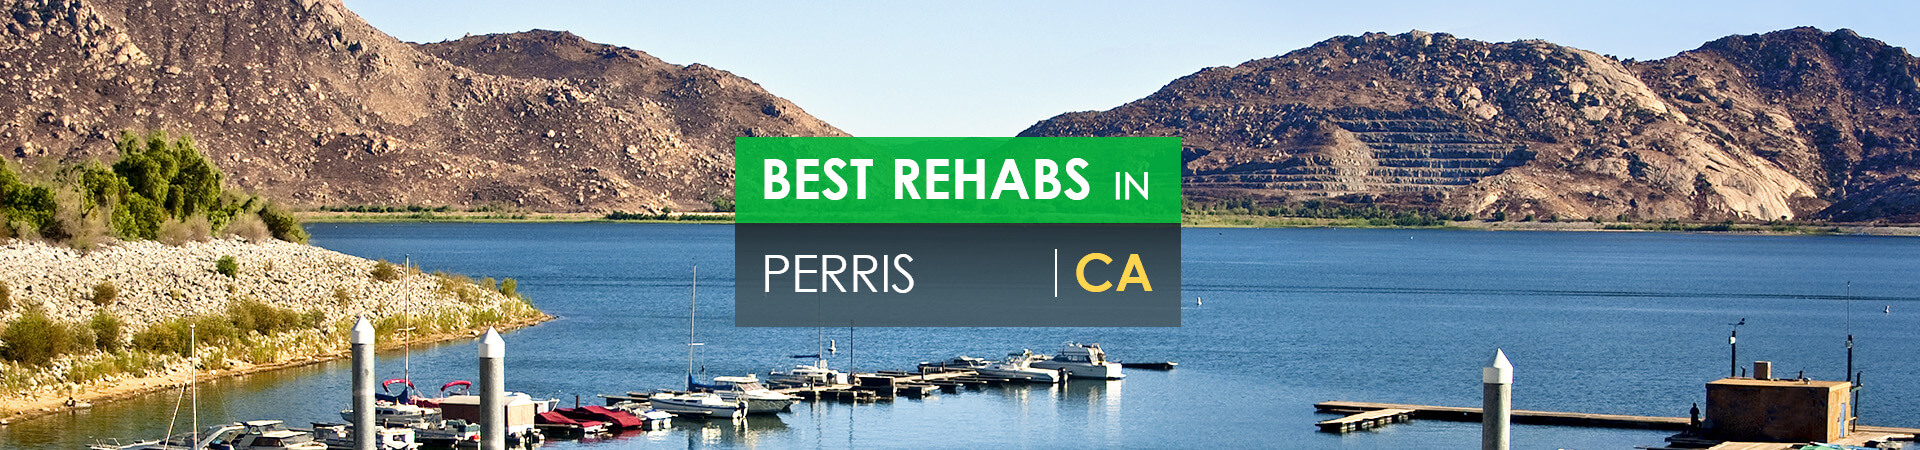 Best rehabs in Perris, CA